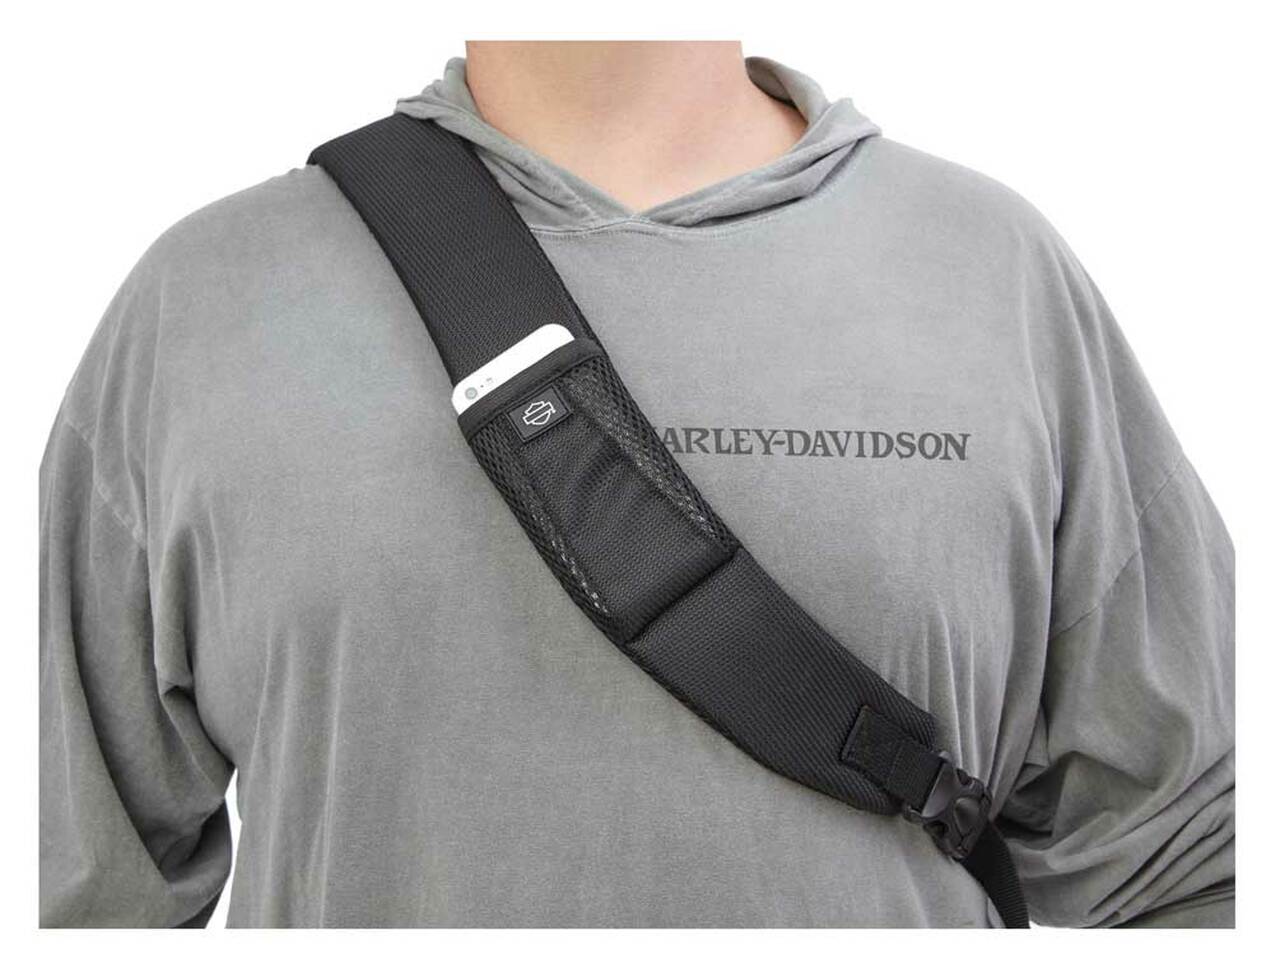 Harley-Davidson No.1 Travel Sling Backpack